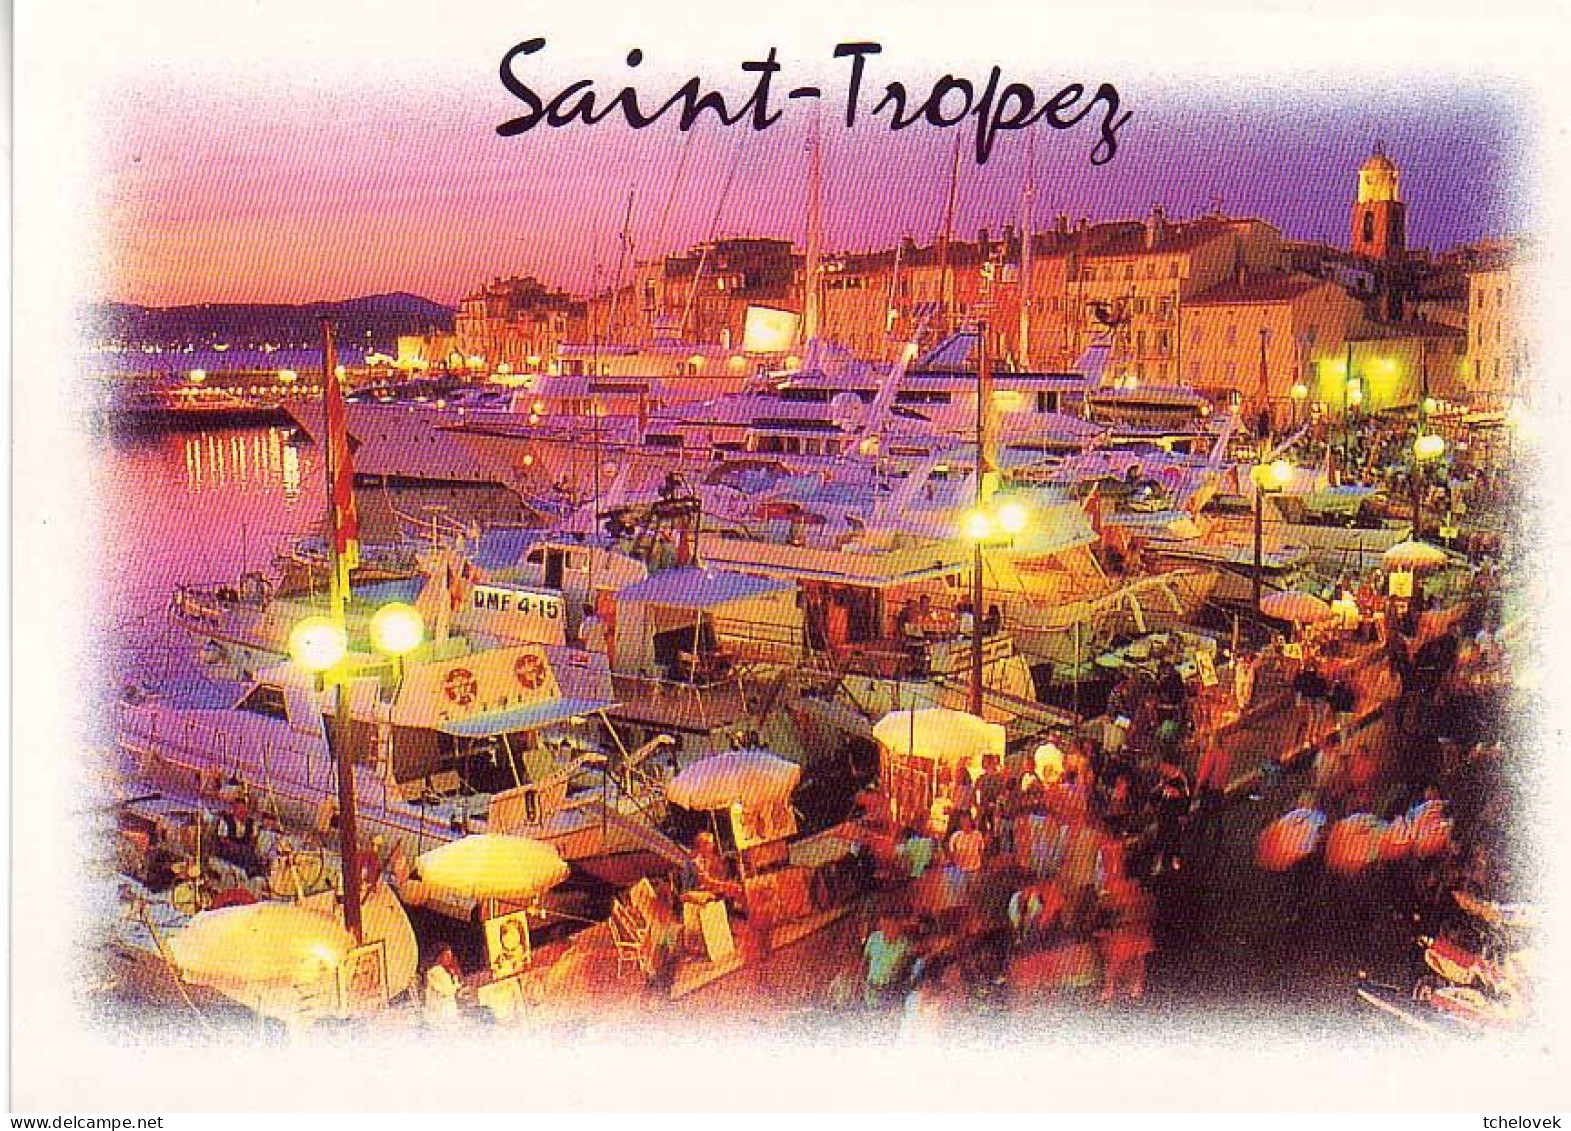 (83). St Tropez. 721 bis Le Port 1972 & carte géographique & port la nuit & (3) 1999